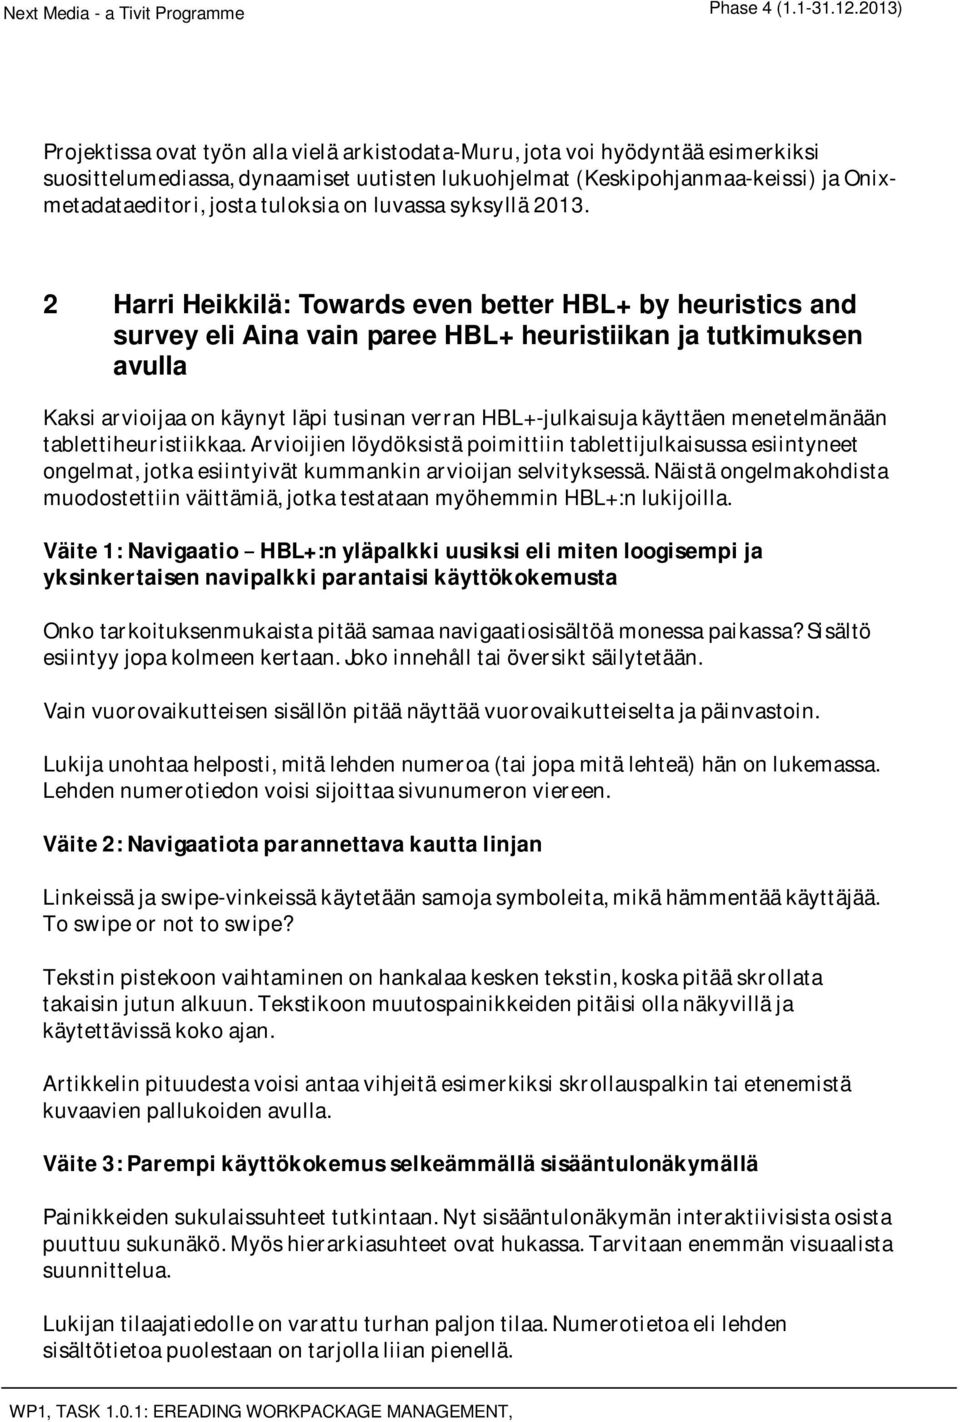 2 Harri Heikkilä: Towards even better HBL+ by heuristics and survey eli Aina vain paree HBL+ heuristiikan ja tutkimuksen avulla